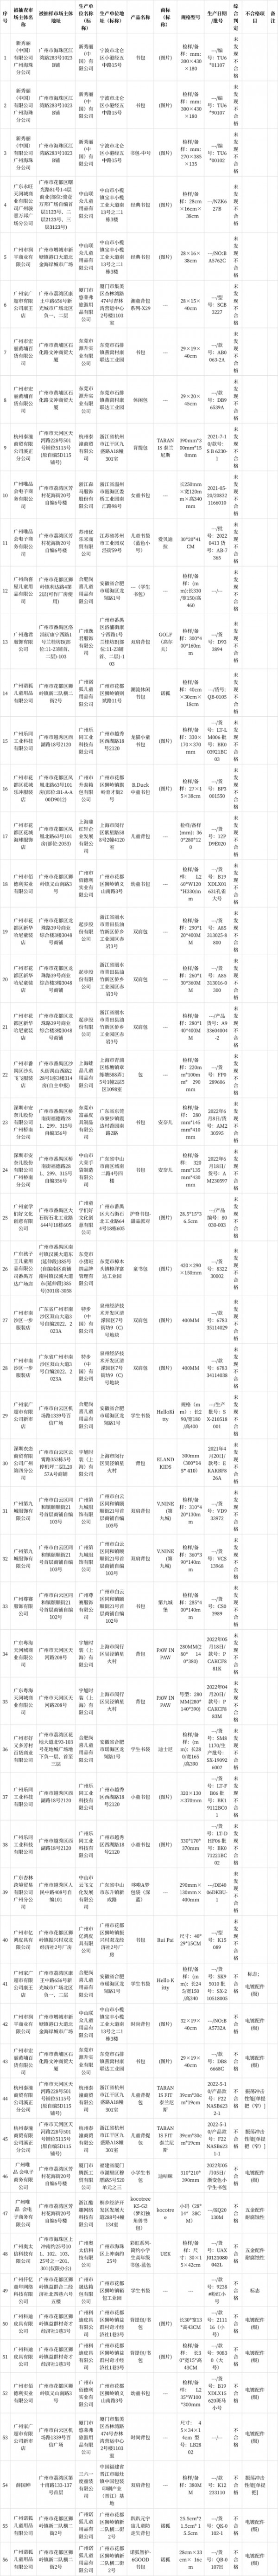 广州：抽查学生书包56批次 16批次不符合标准要求